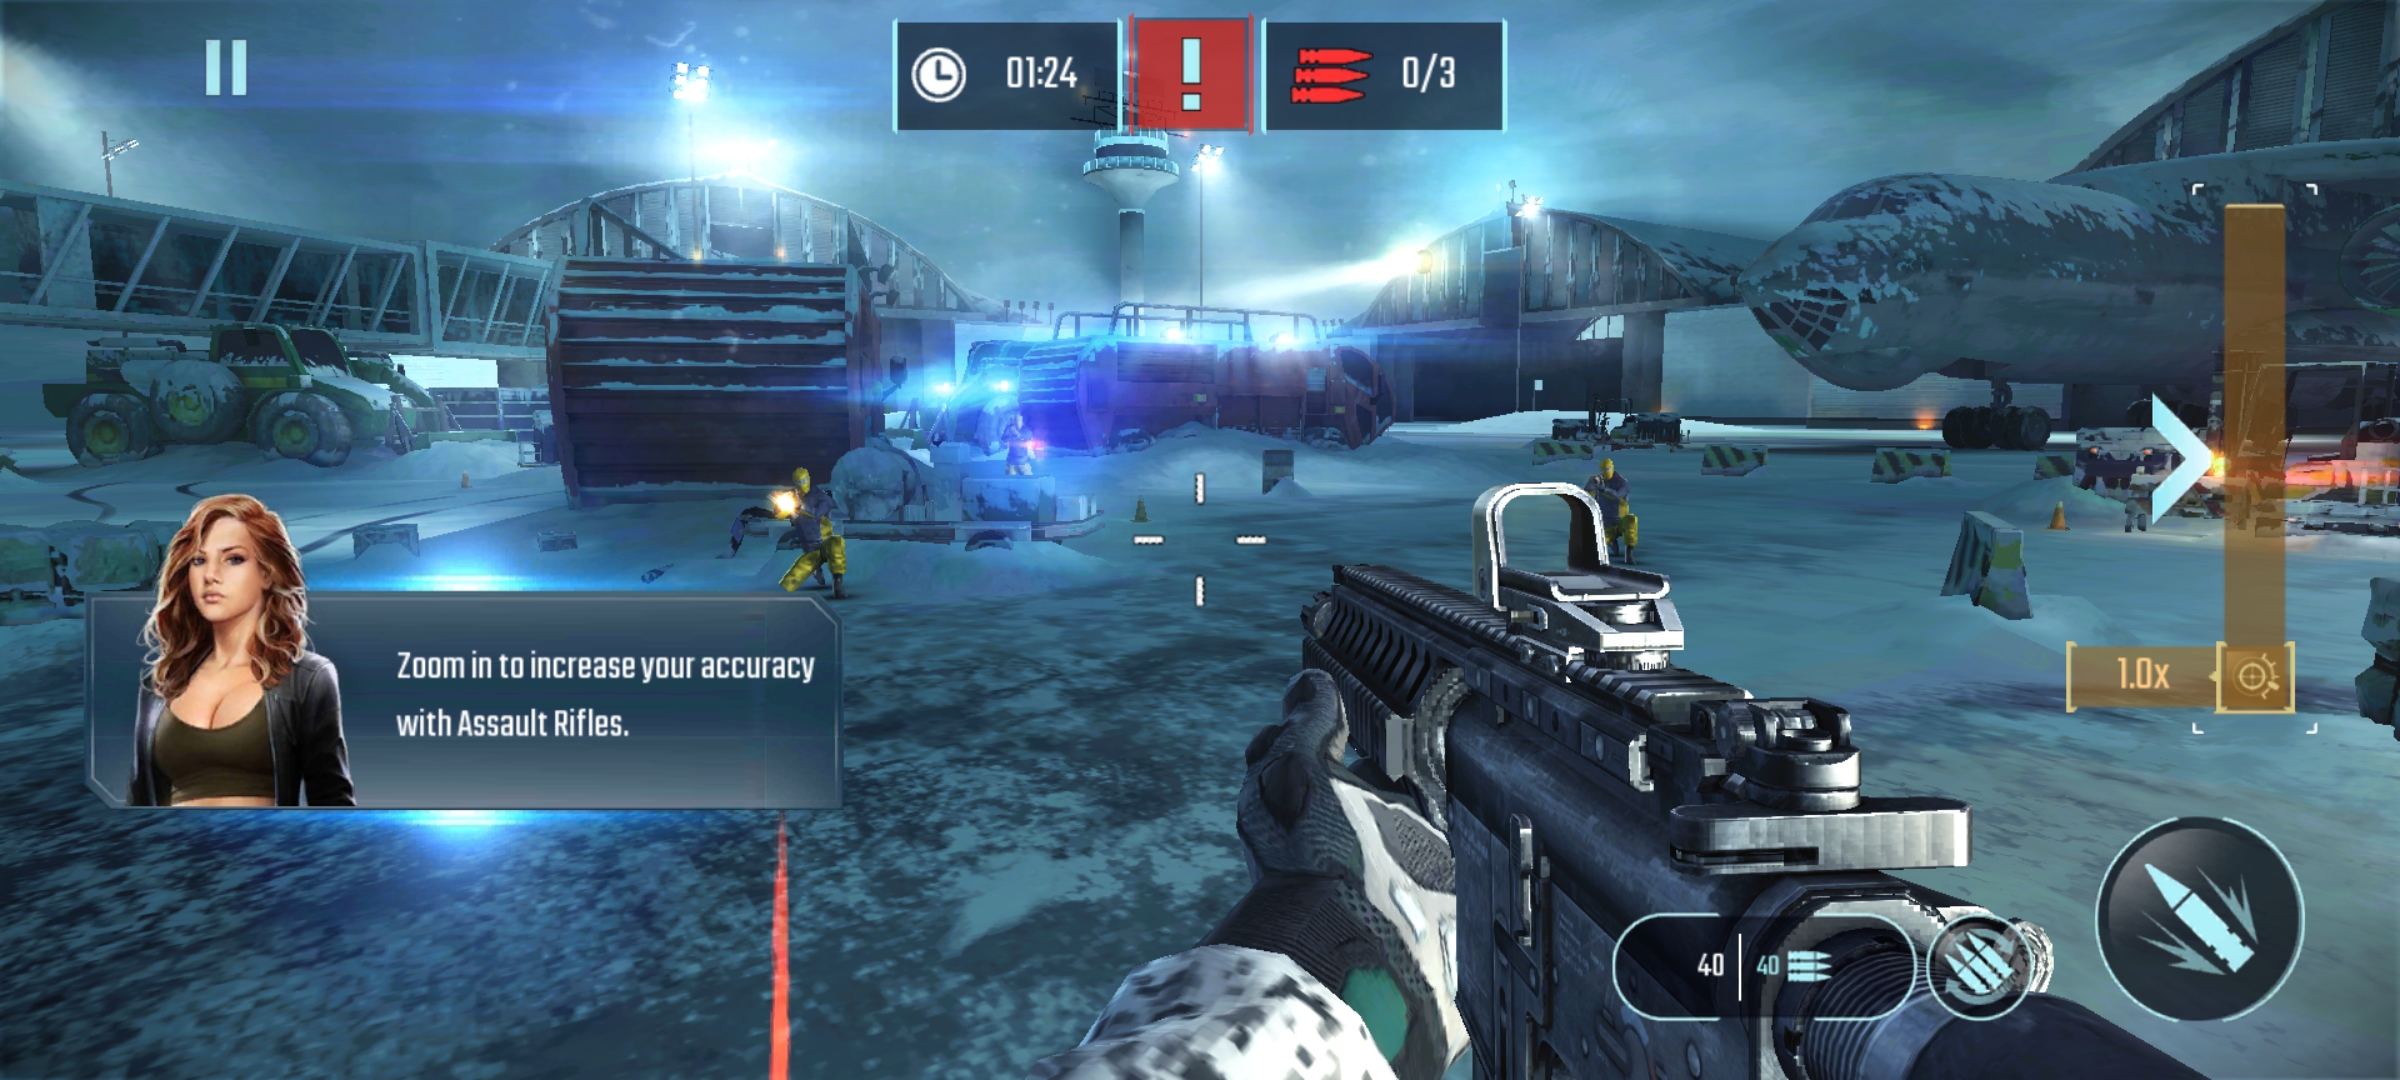 [Game Android] Sniper Fury Premium